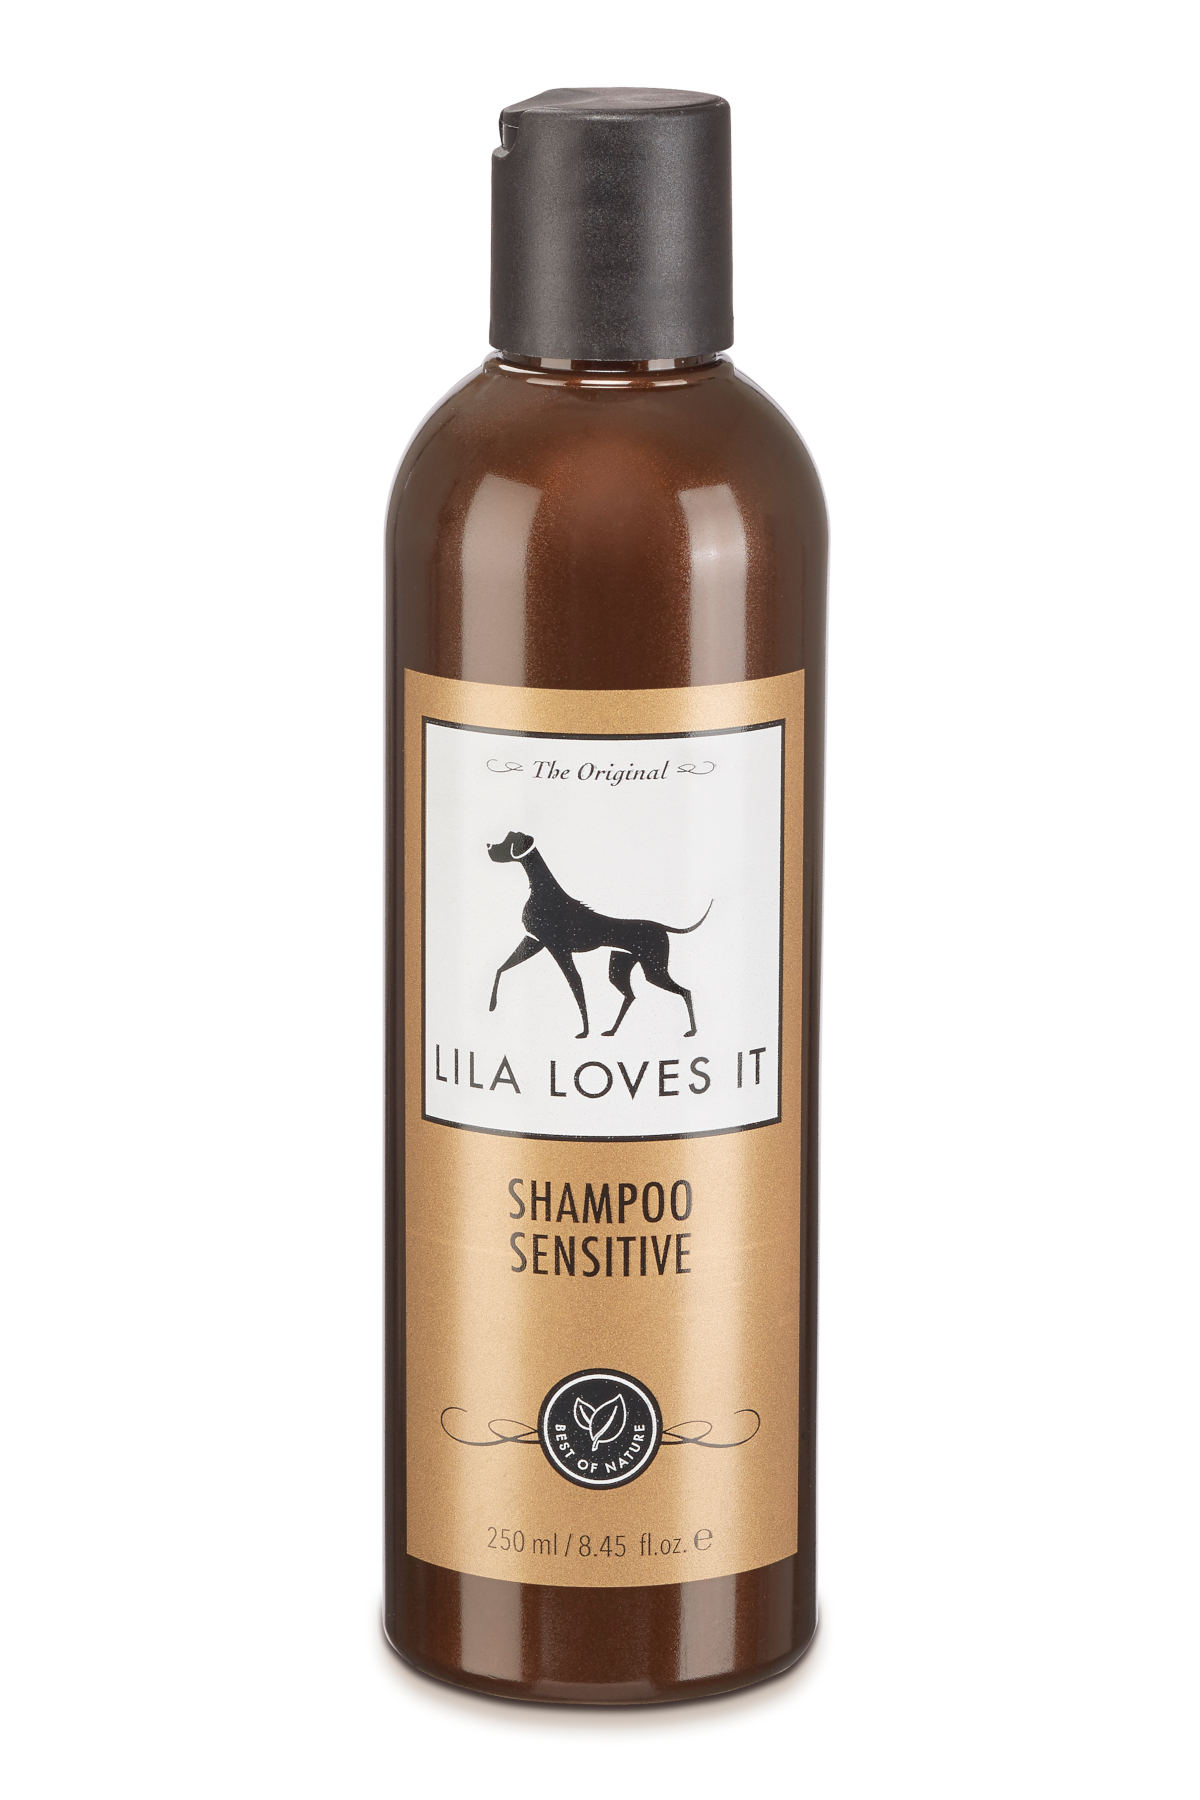 Lila loves it- Shampoo Sensitive